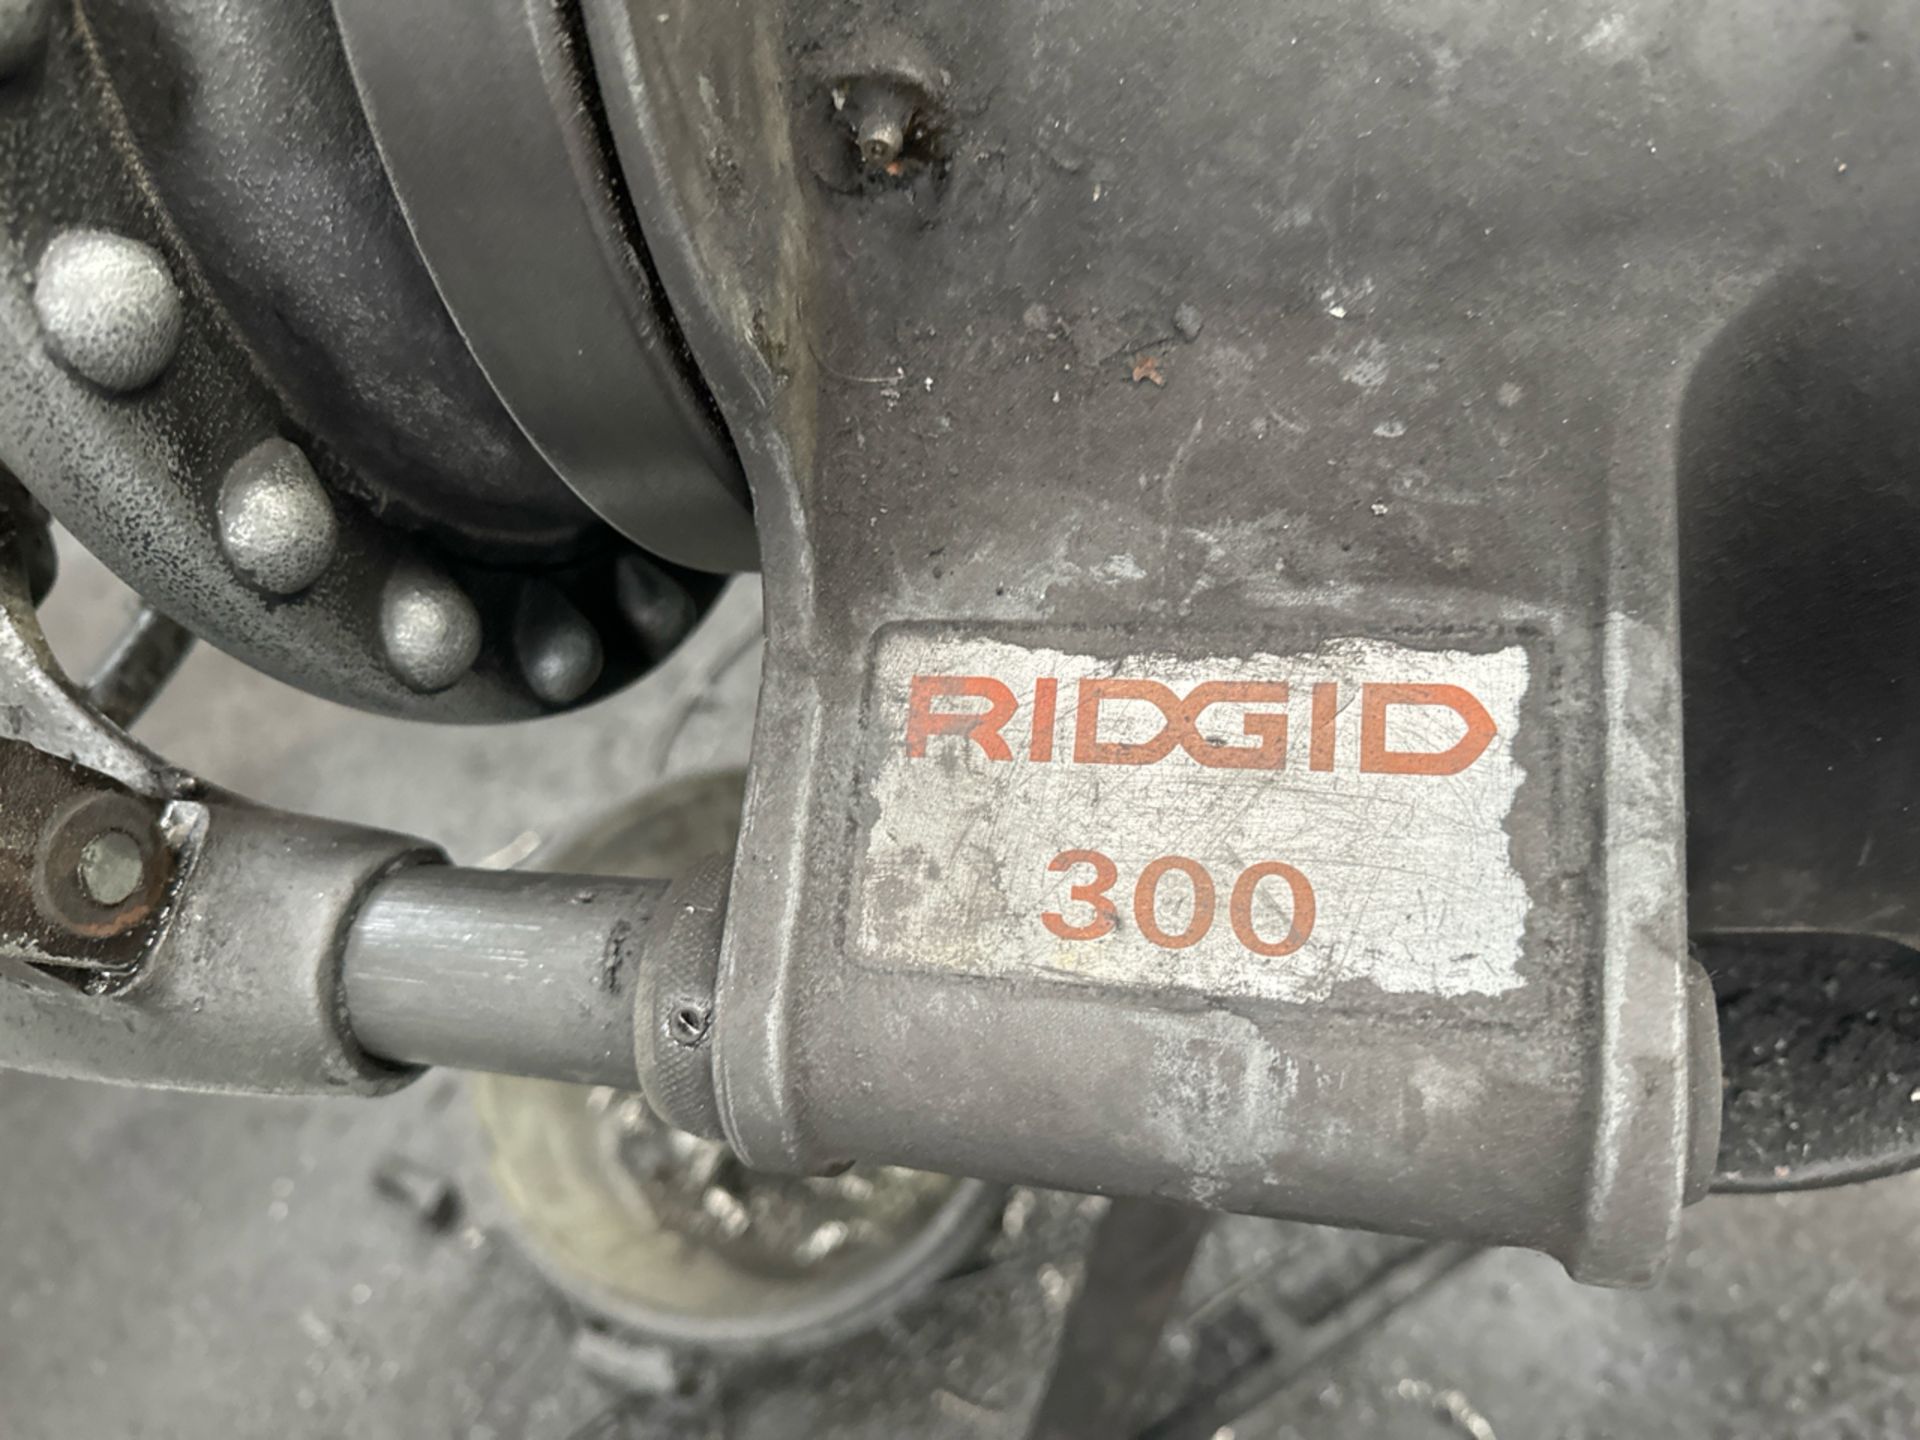 Rigid 300 Pipe Threading Machine - Bild 3 aus 5